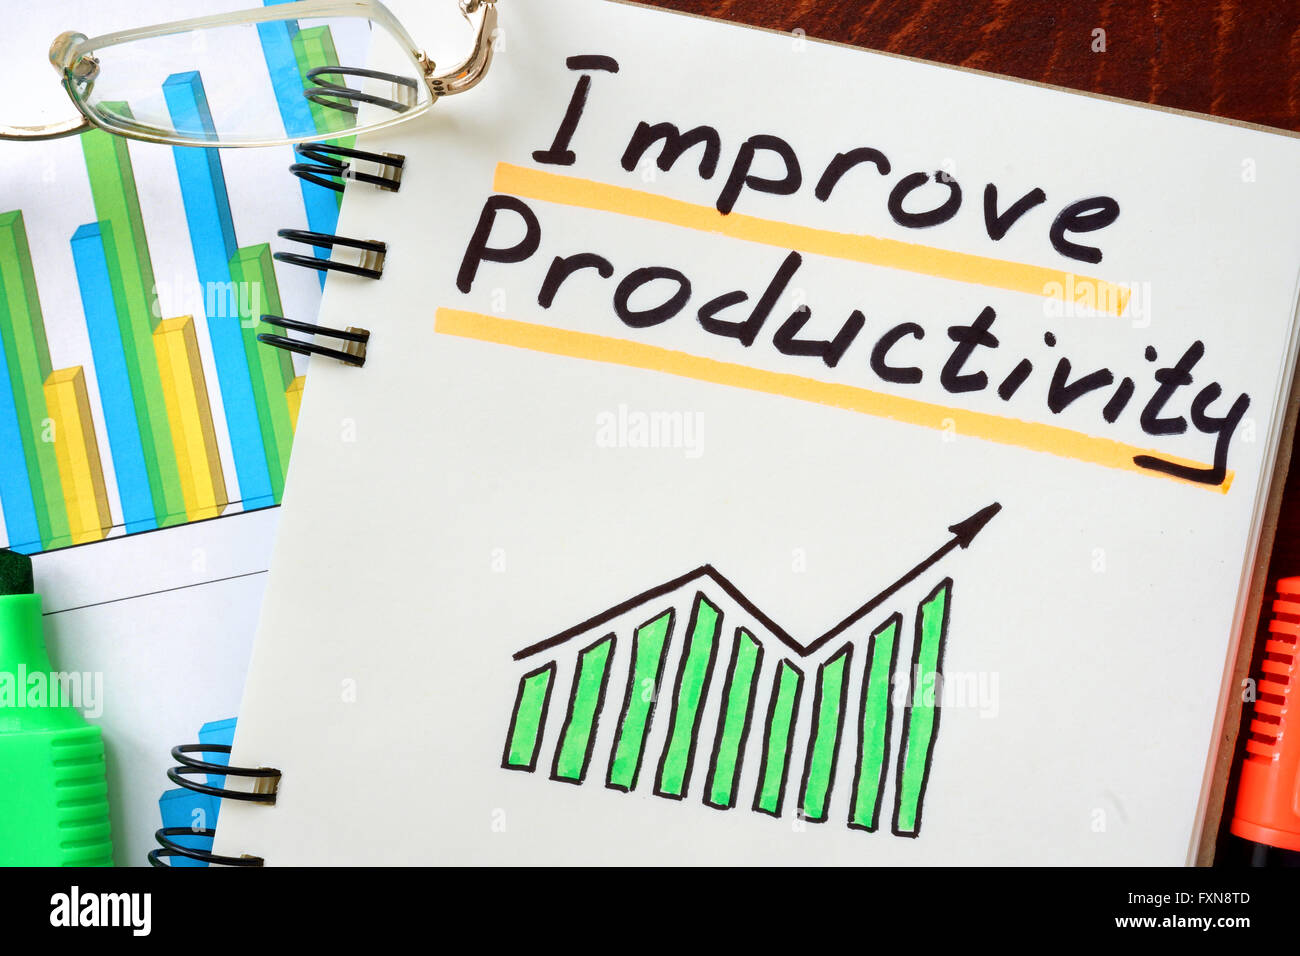 Mejorar la productividad escritas en un bloc de notas. Concepto de negocio. Foto de stock